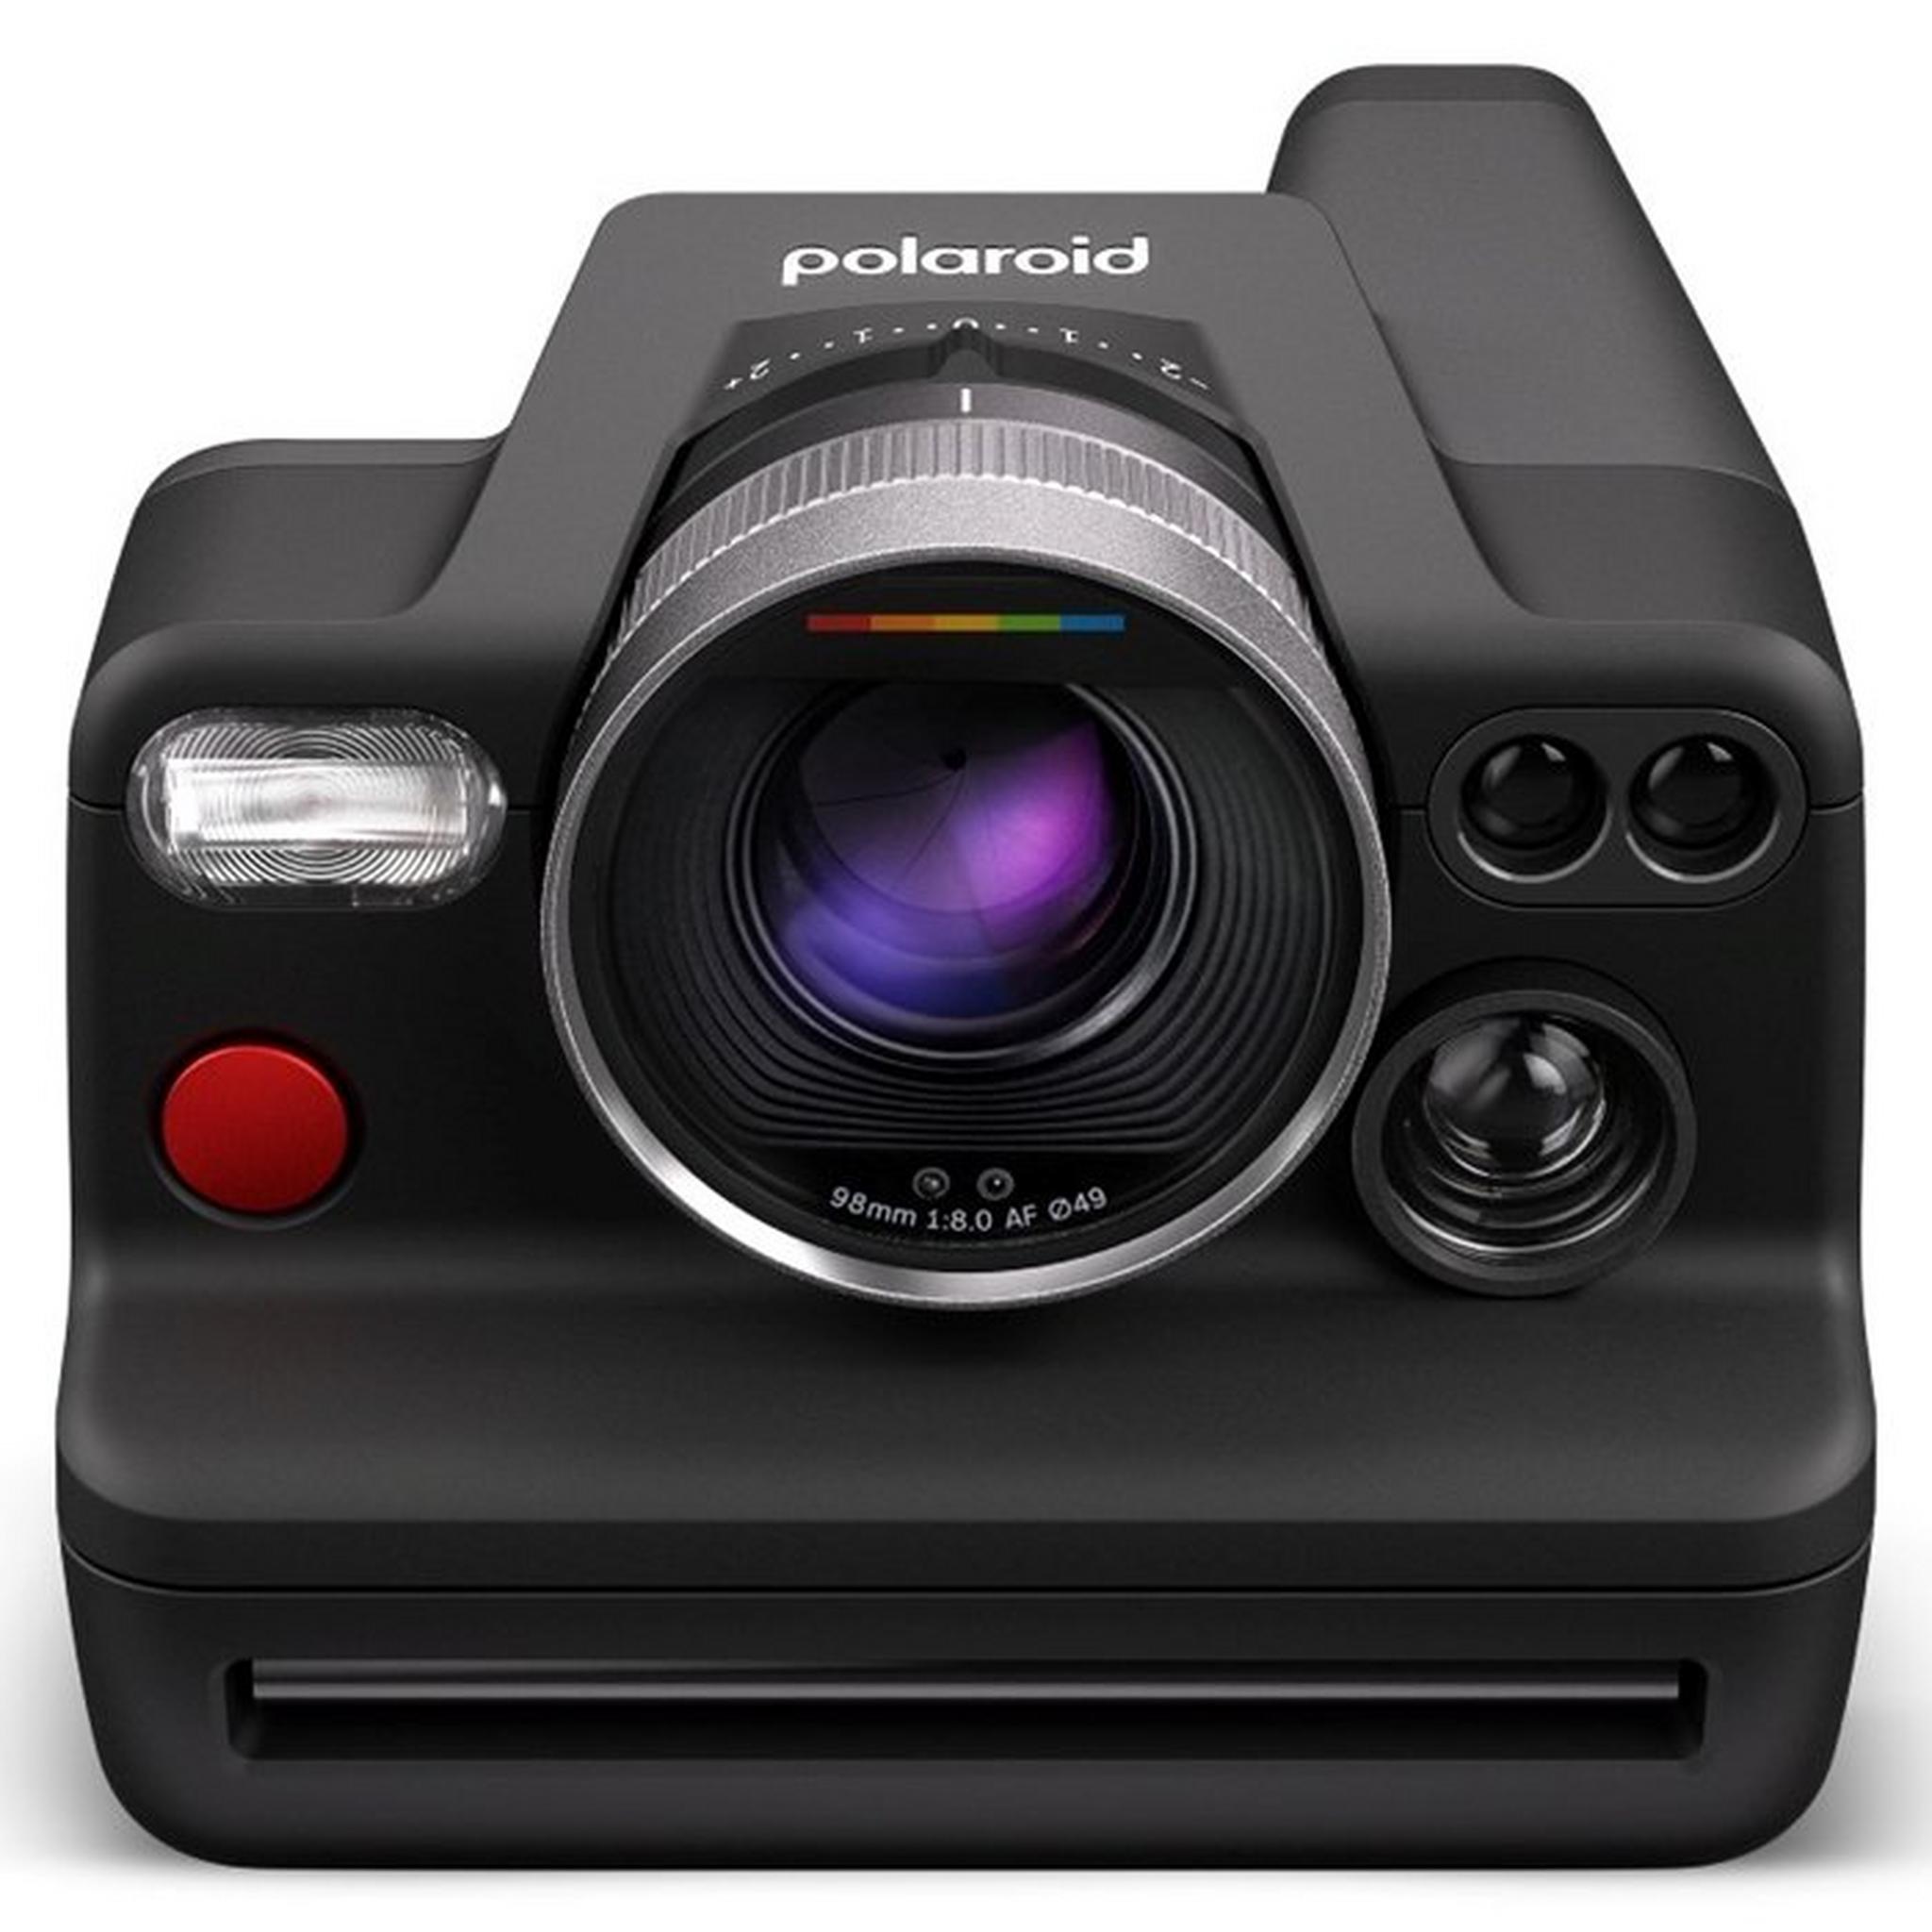 كاميرا الصور الفورية أي-2 من بولارويد, 98 مم, 009078 – أسود